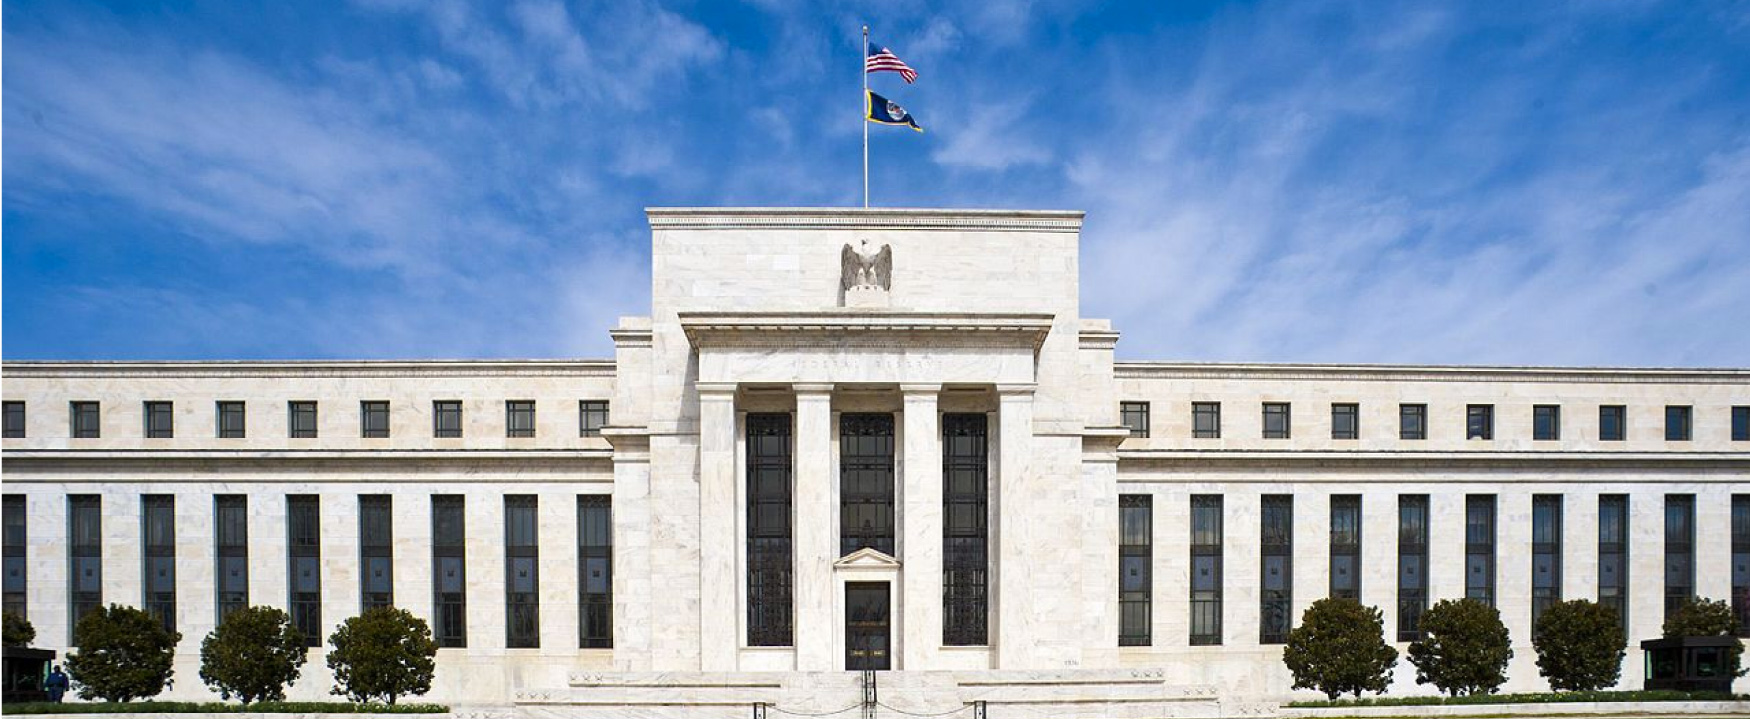 Le bâtiment du conseil de la Réserve fédérale Marriner S. Eccles est illustré. Le très grand bâtiment, situé à Washington DC, est construit en marbre blanc et possède une grande entrée.